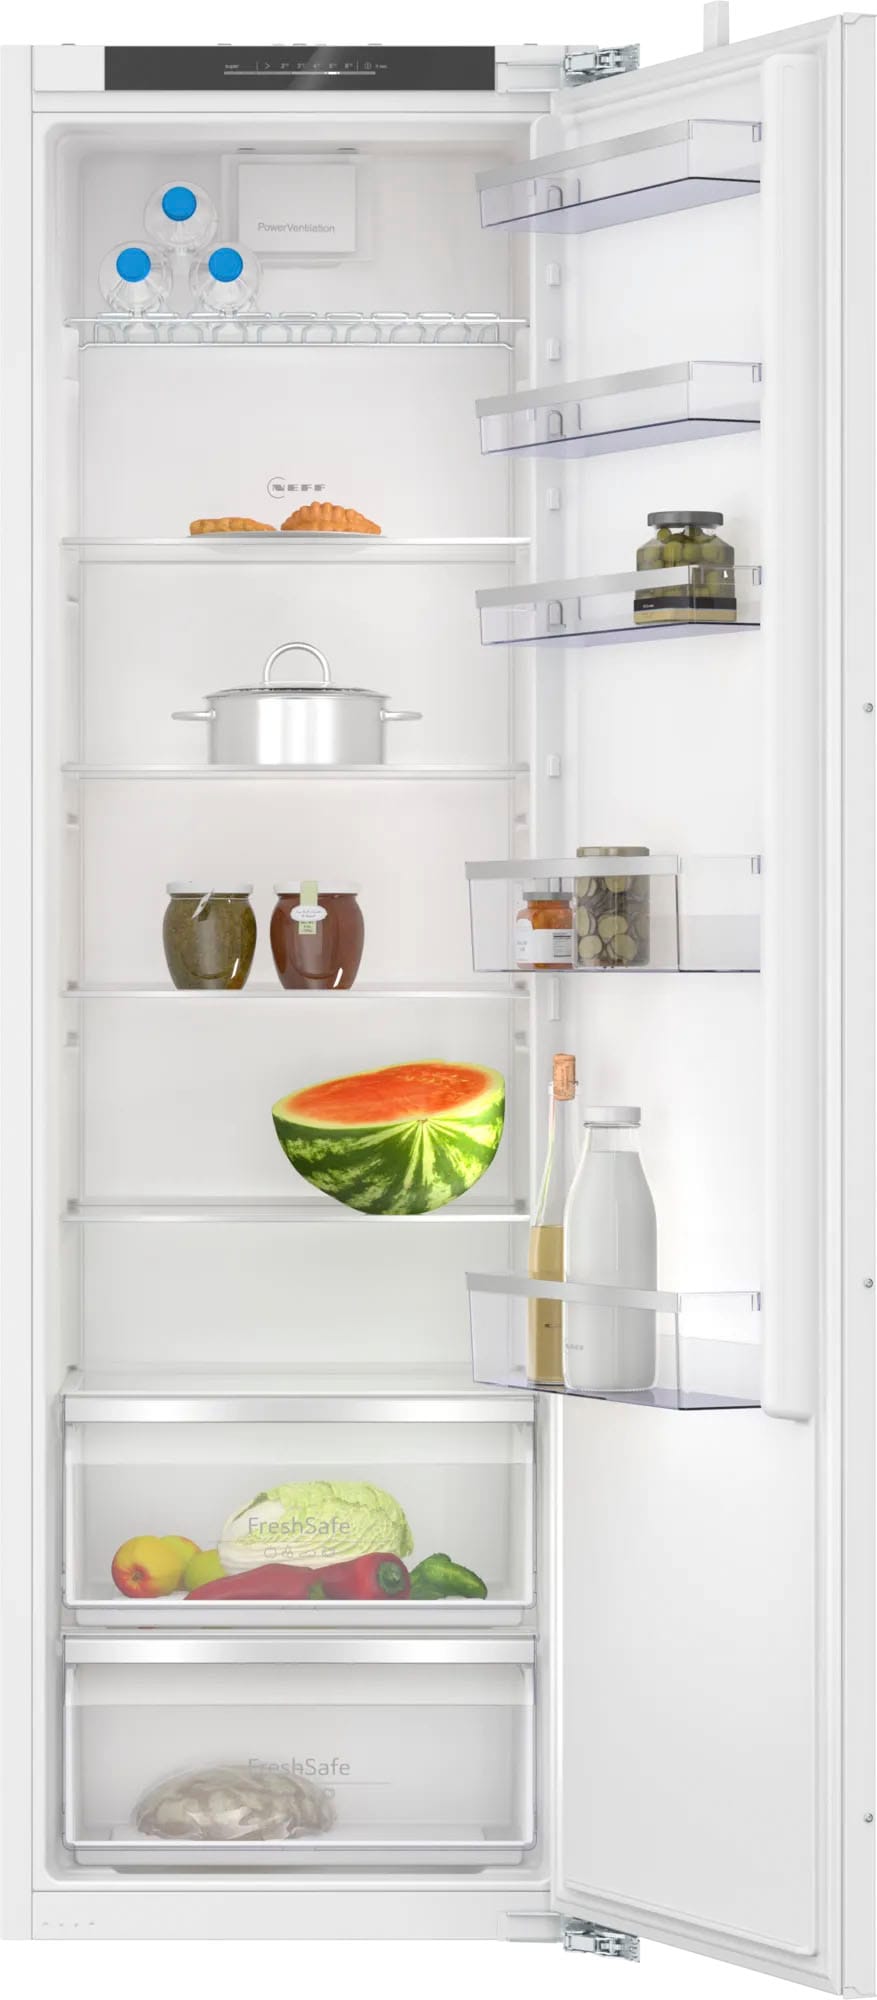 Neff Kühlschränke online auf Teilzahlung kaufen ▻ Universal. Jeder hat sein